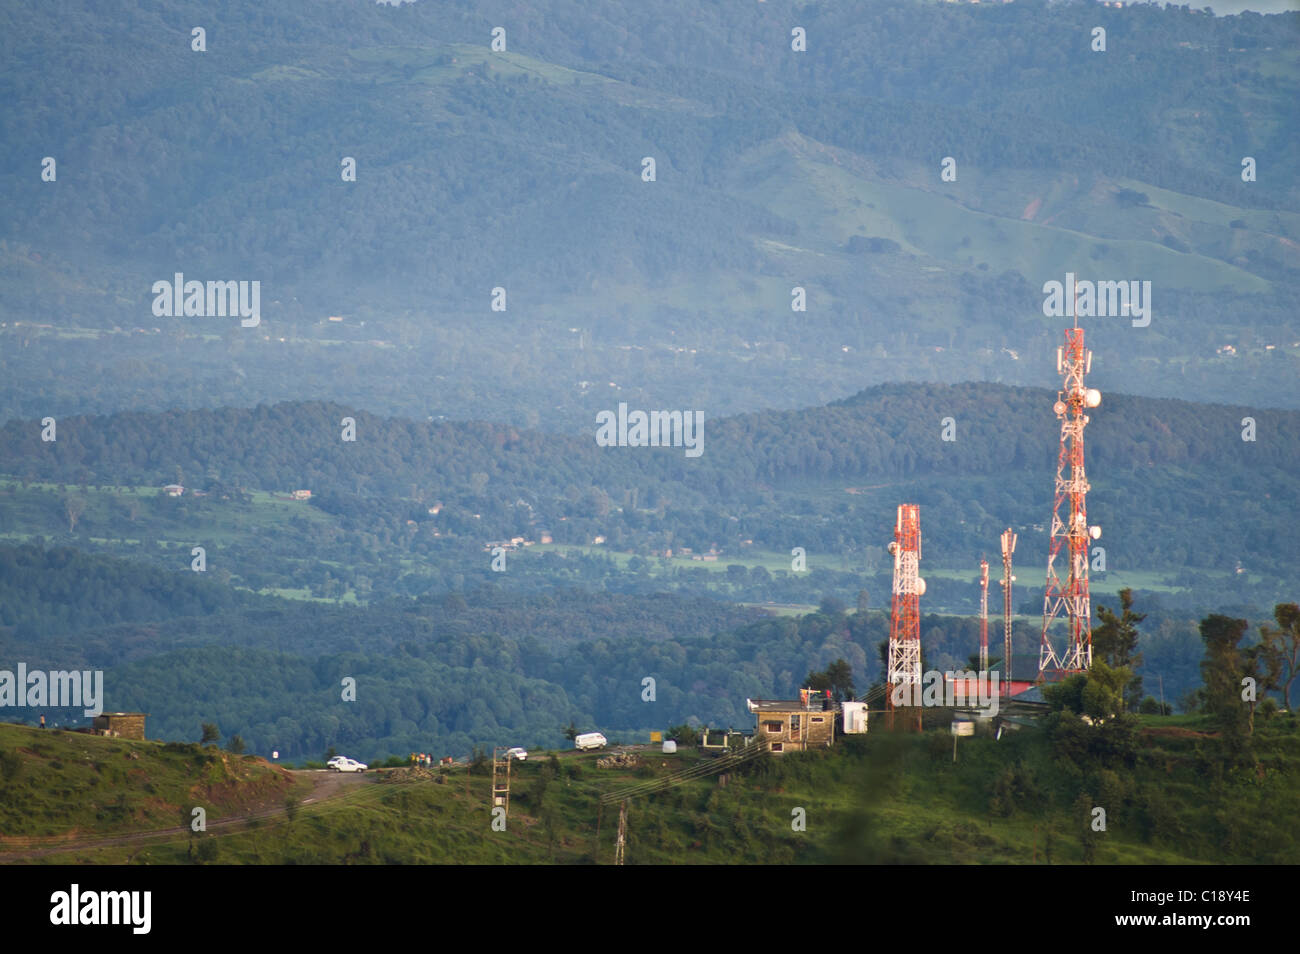 Mâts dans le paysage de l'Himachal Pradesh, Inde Banque D'Images